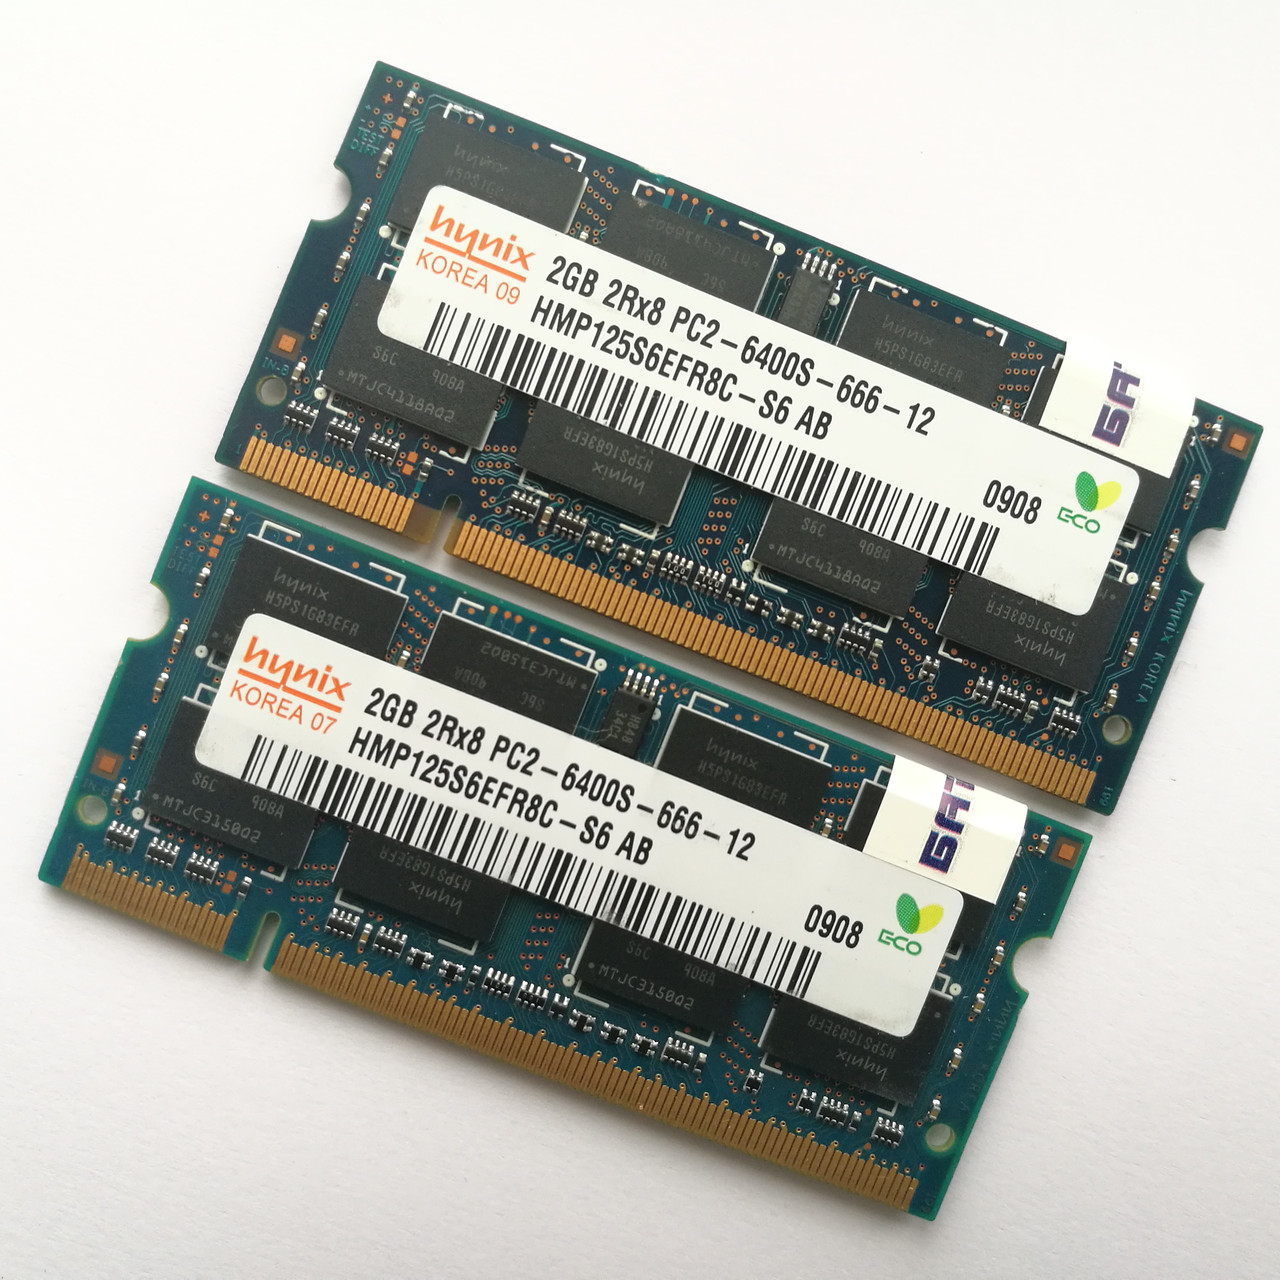 Оперативная память Hynix SODIMM DDR2 4Gb (2Gb+2Gb) 800 MHz 6400s CL6 (HMP125S6EFR8C-S6 AB) Б/У